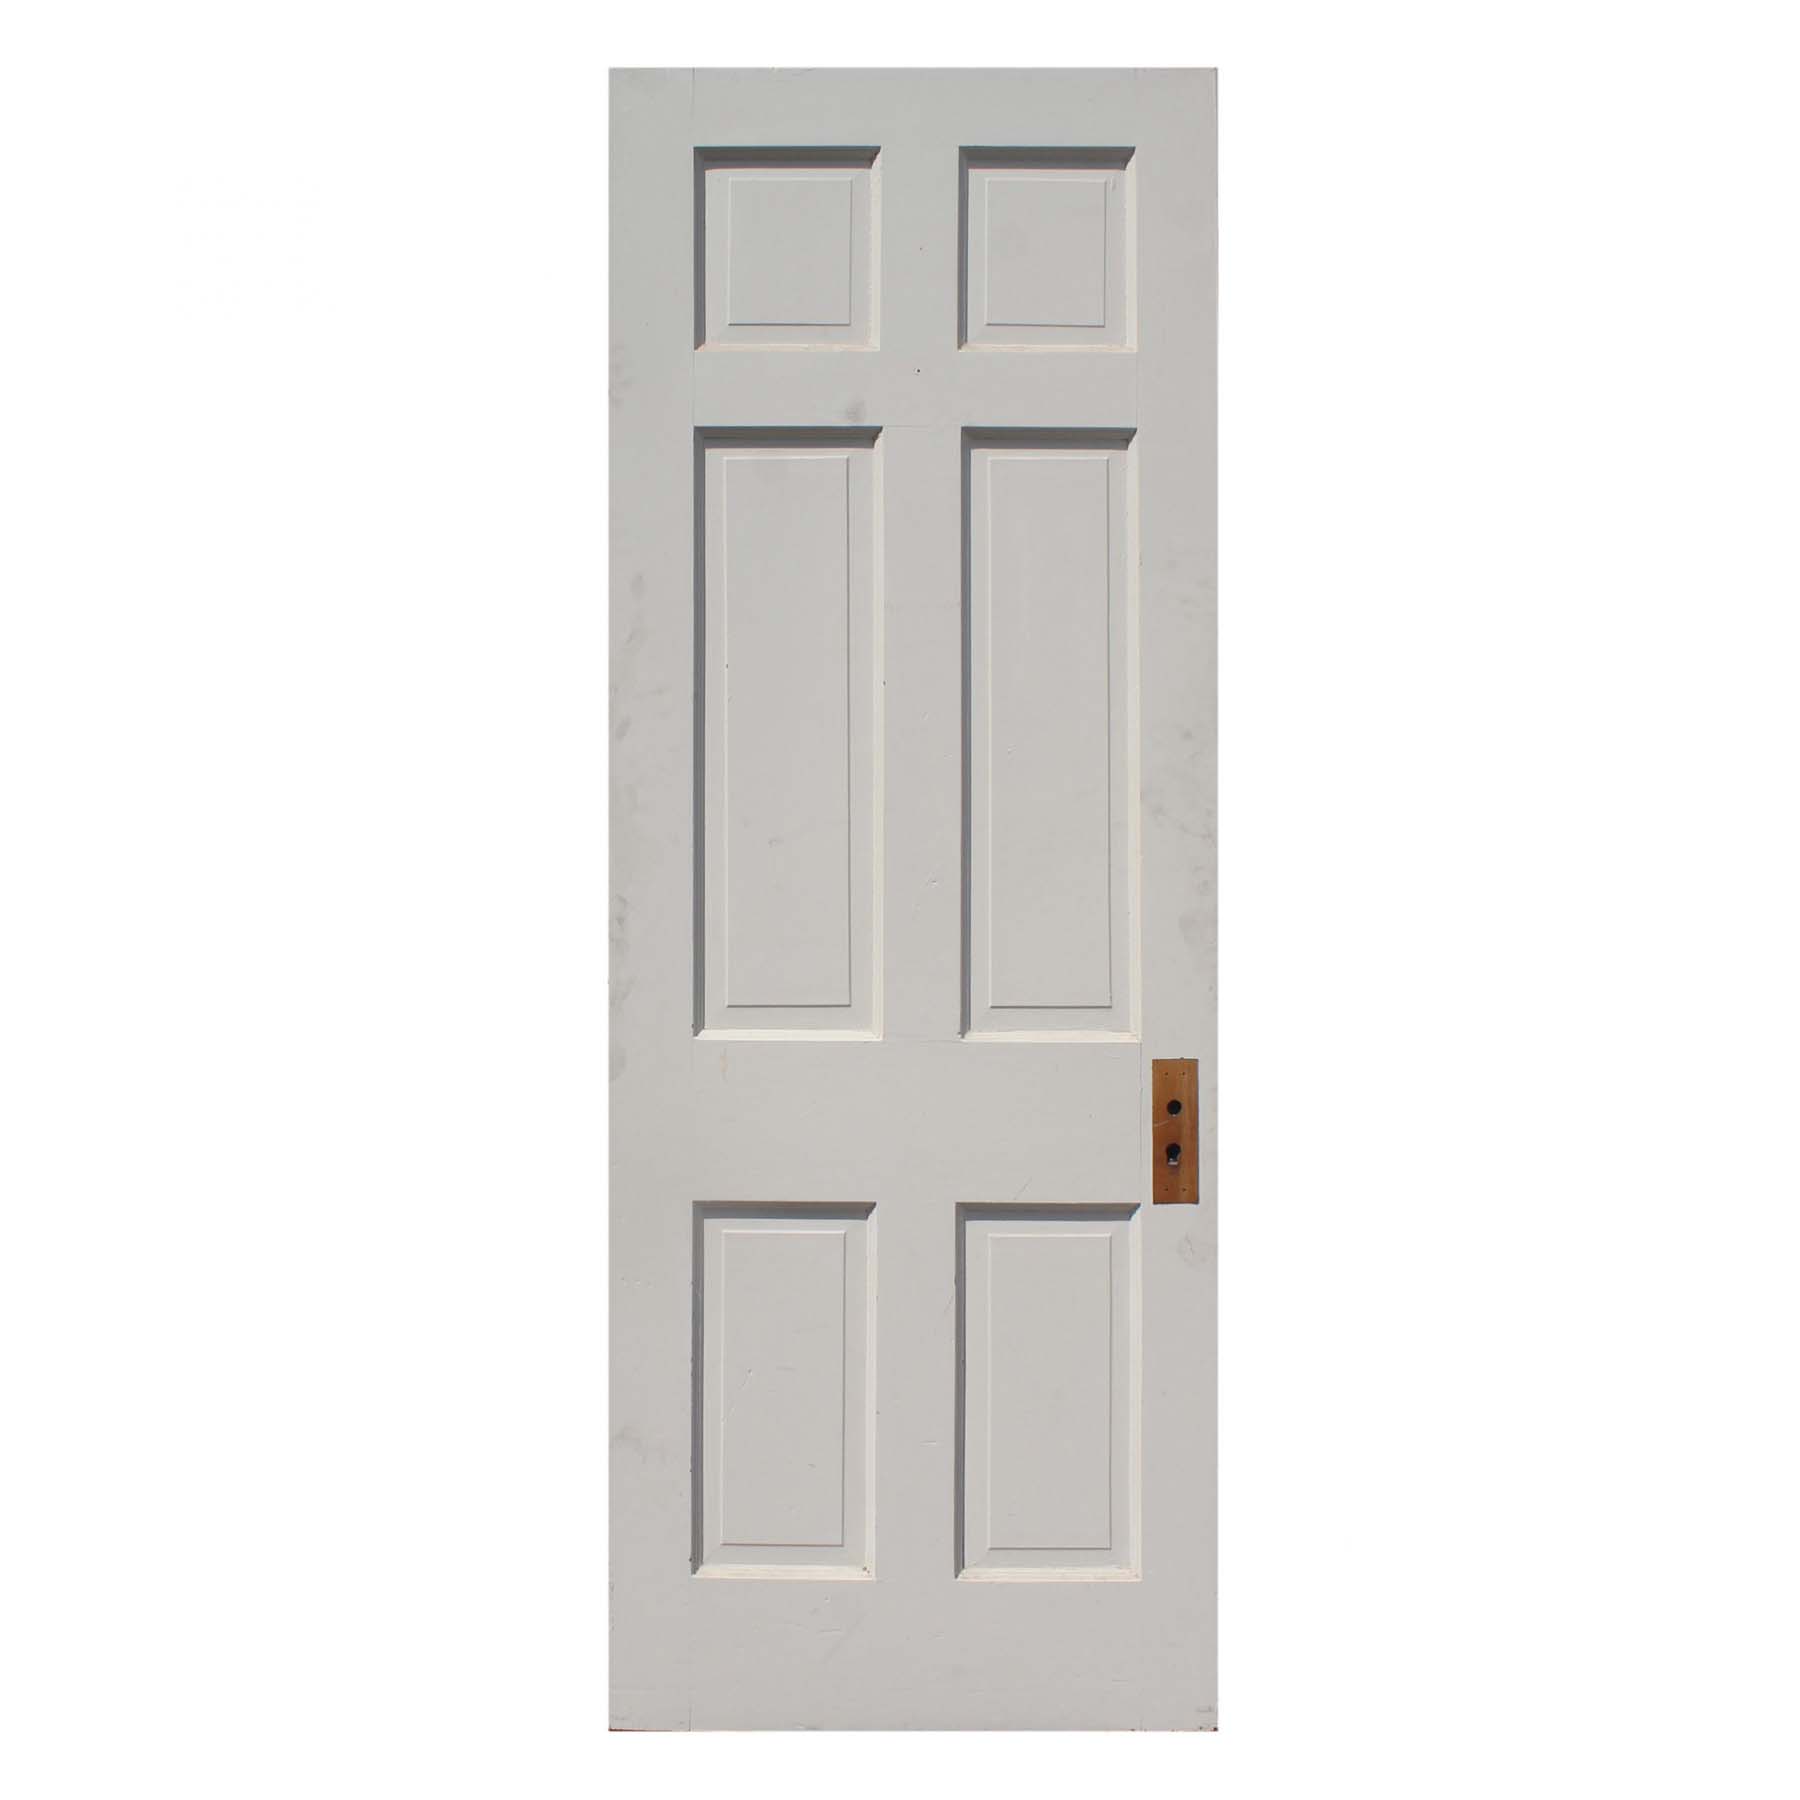 Salvaged 30” Six-Panel Solid Wood Door-72316